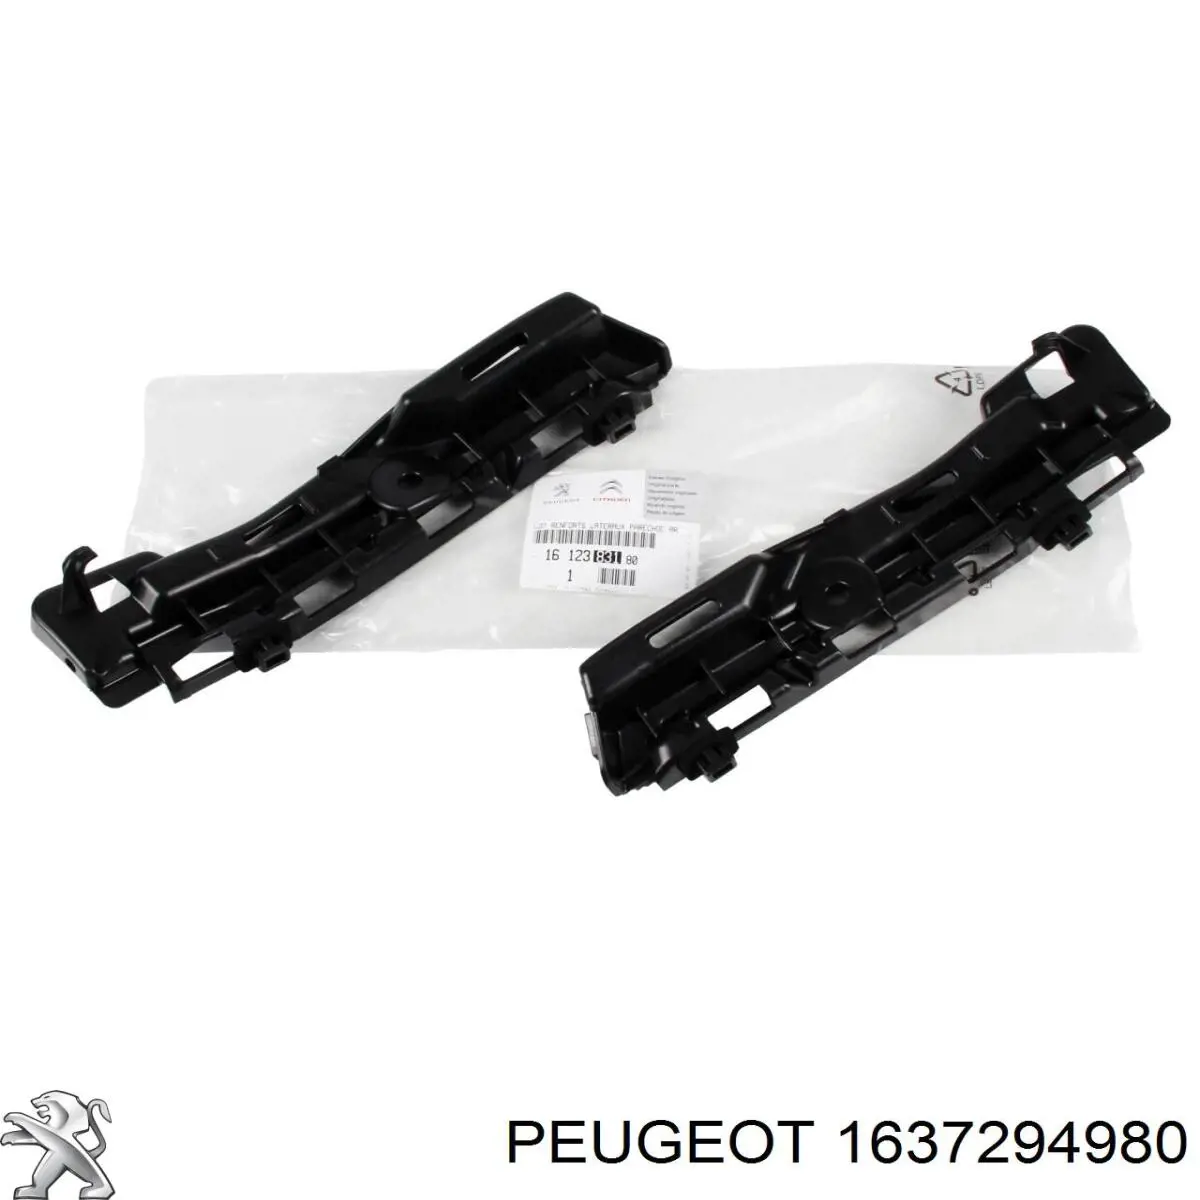 1637294980 Peugeot/Citroen rejilla de antinieblas delantera derecha